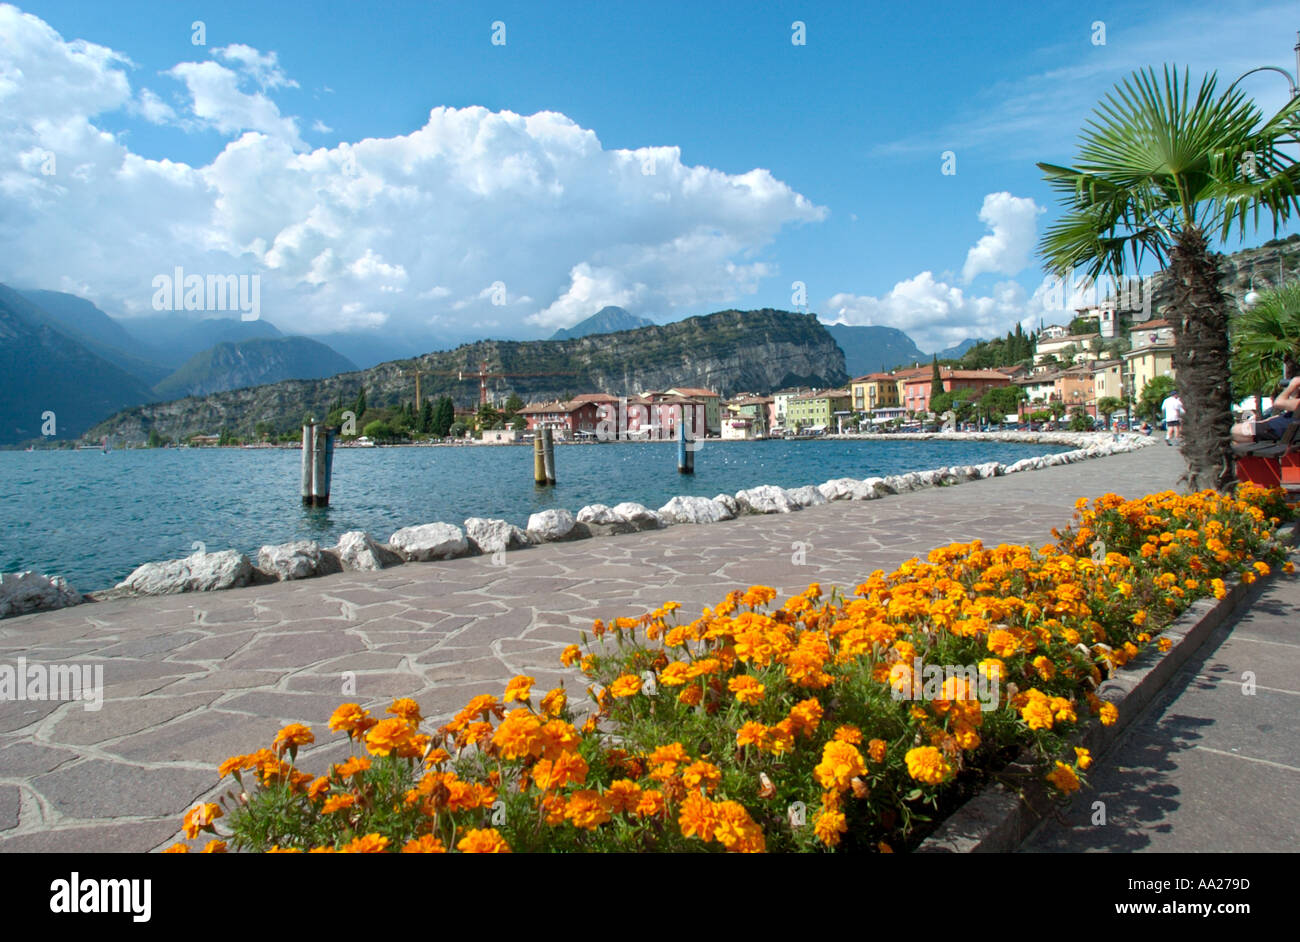 Lago, Torbole sul lago di Garda, Italia Foto Stock